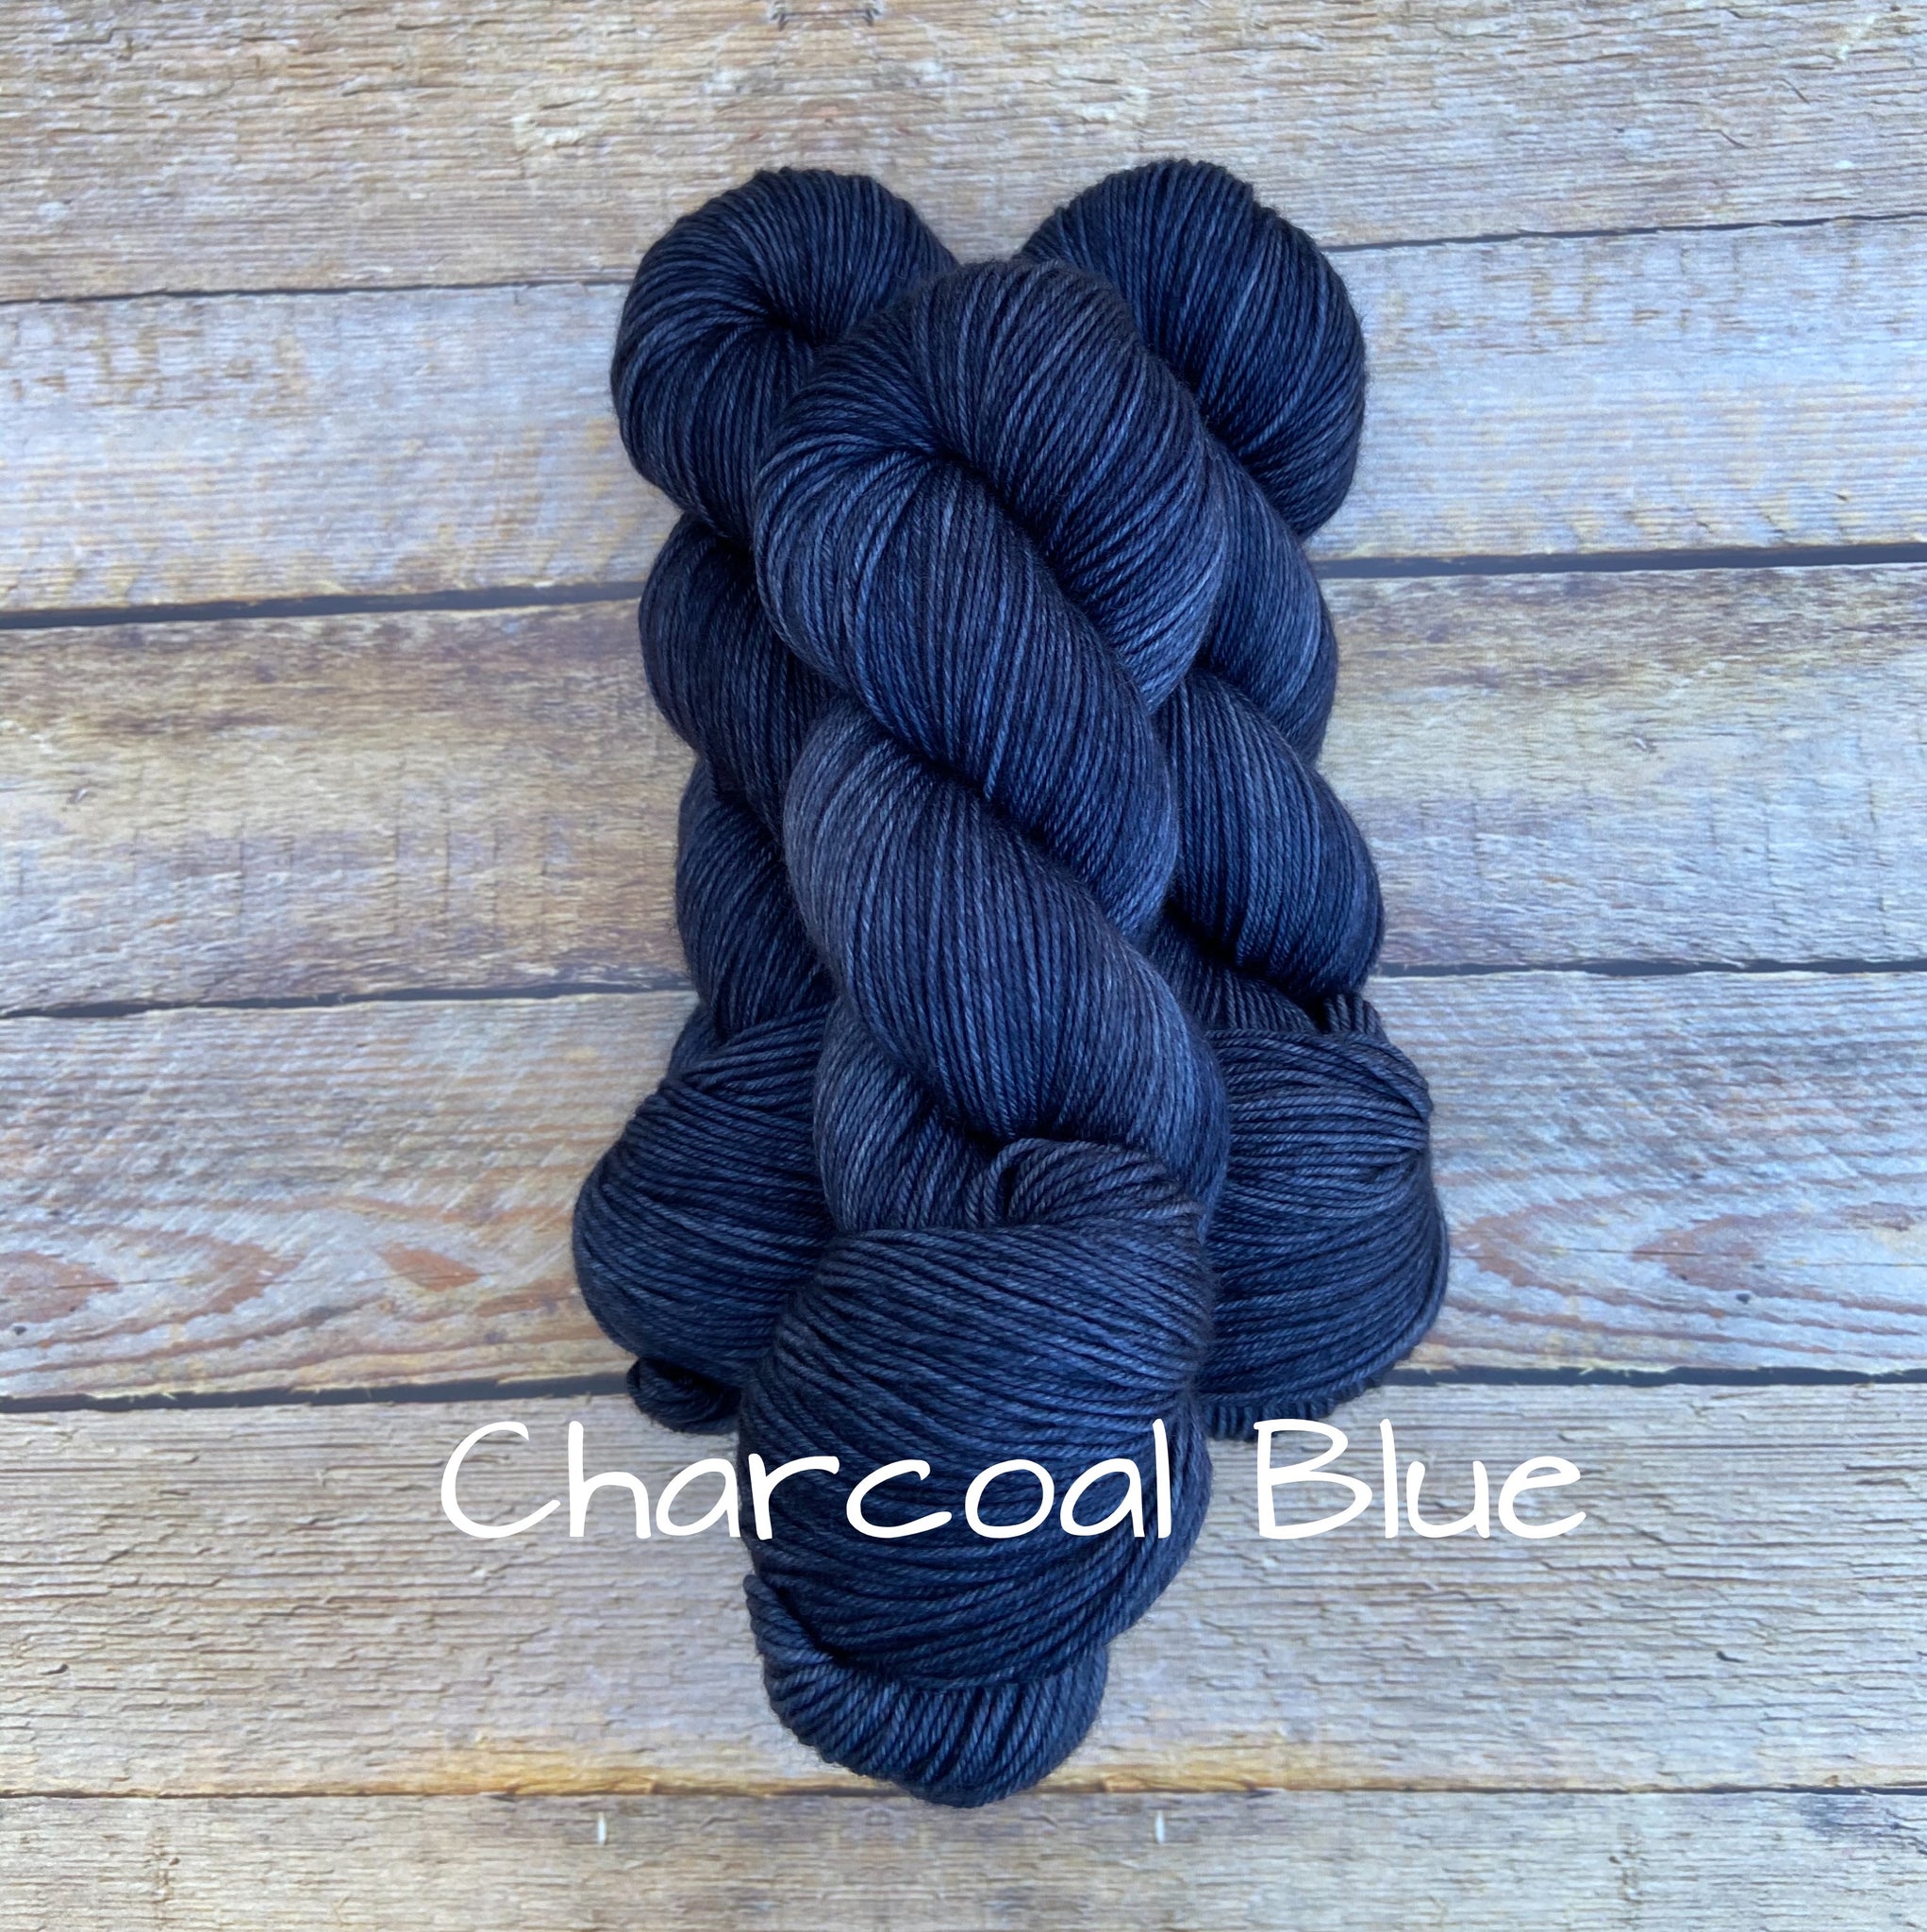 Charcoal Blue